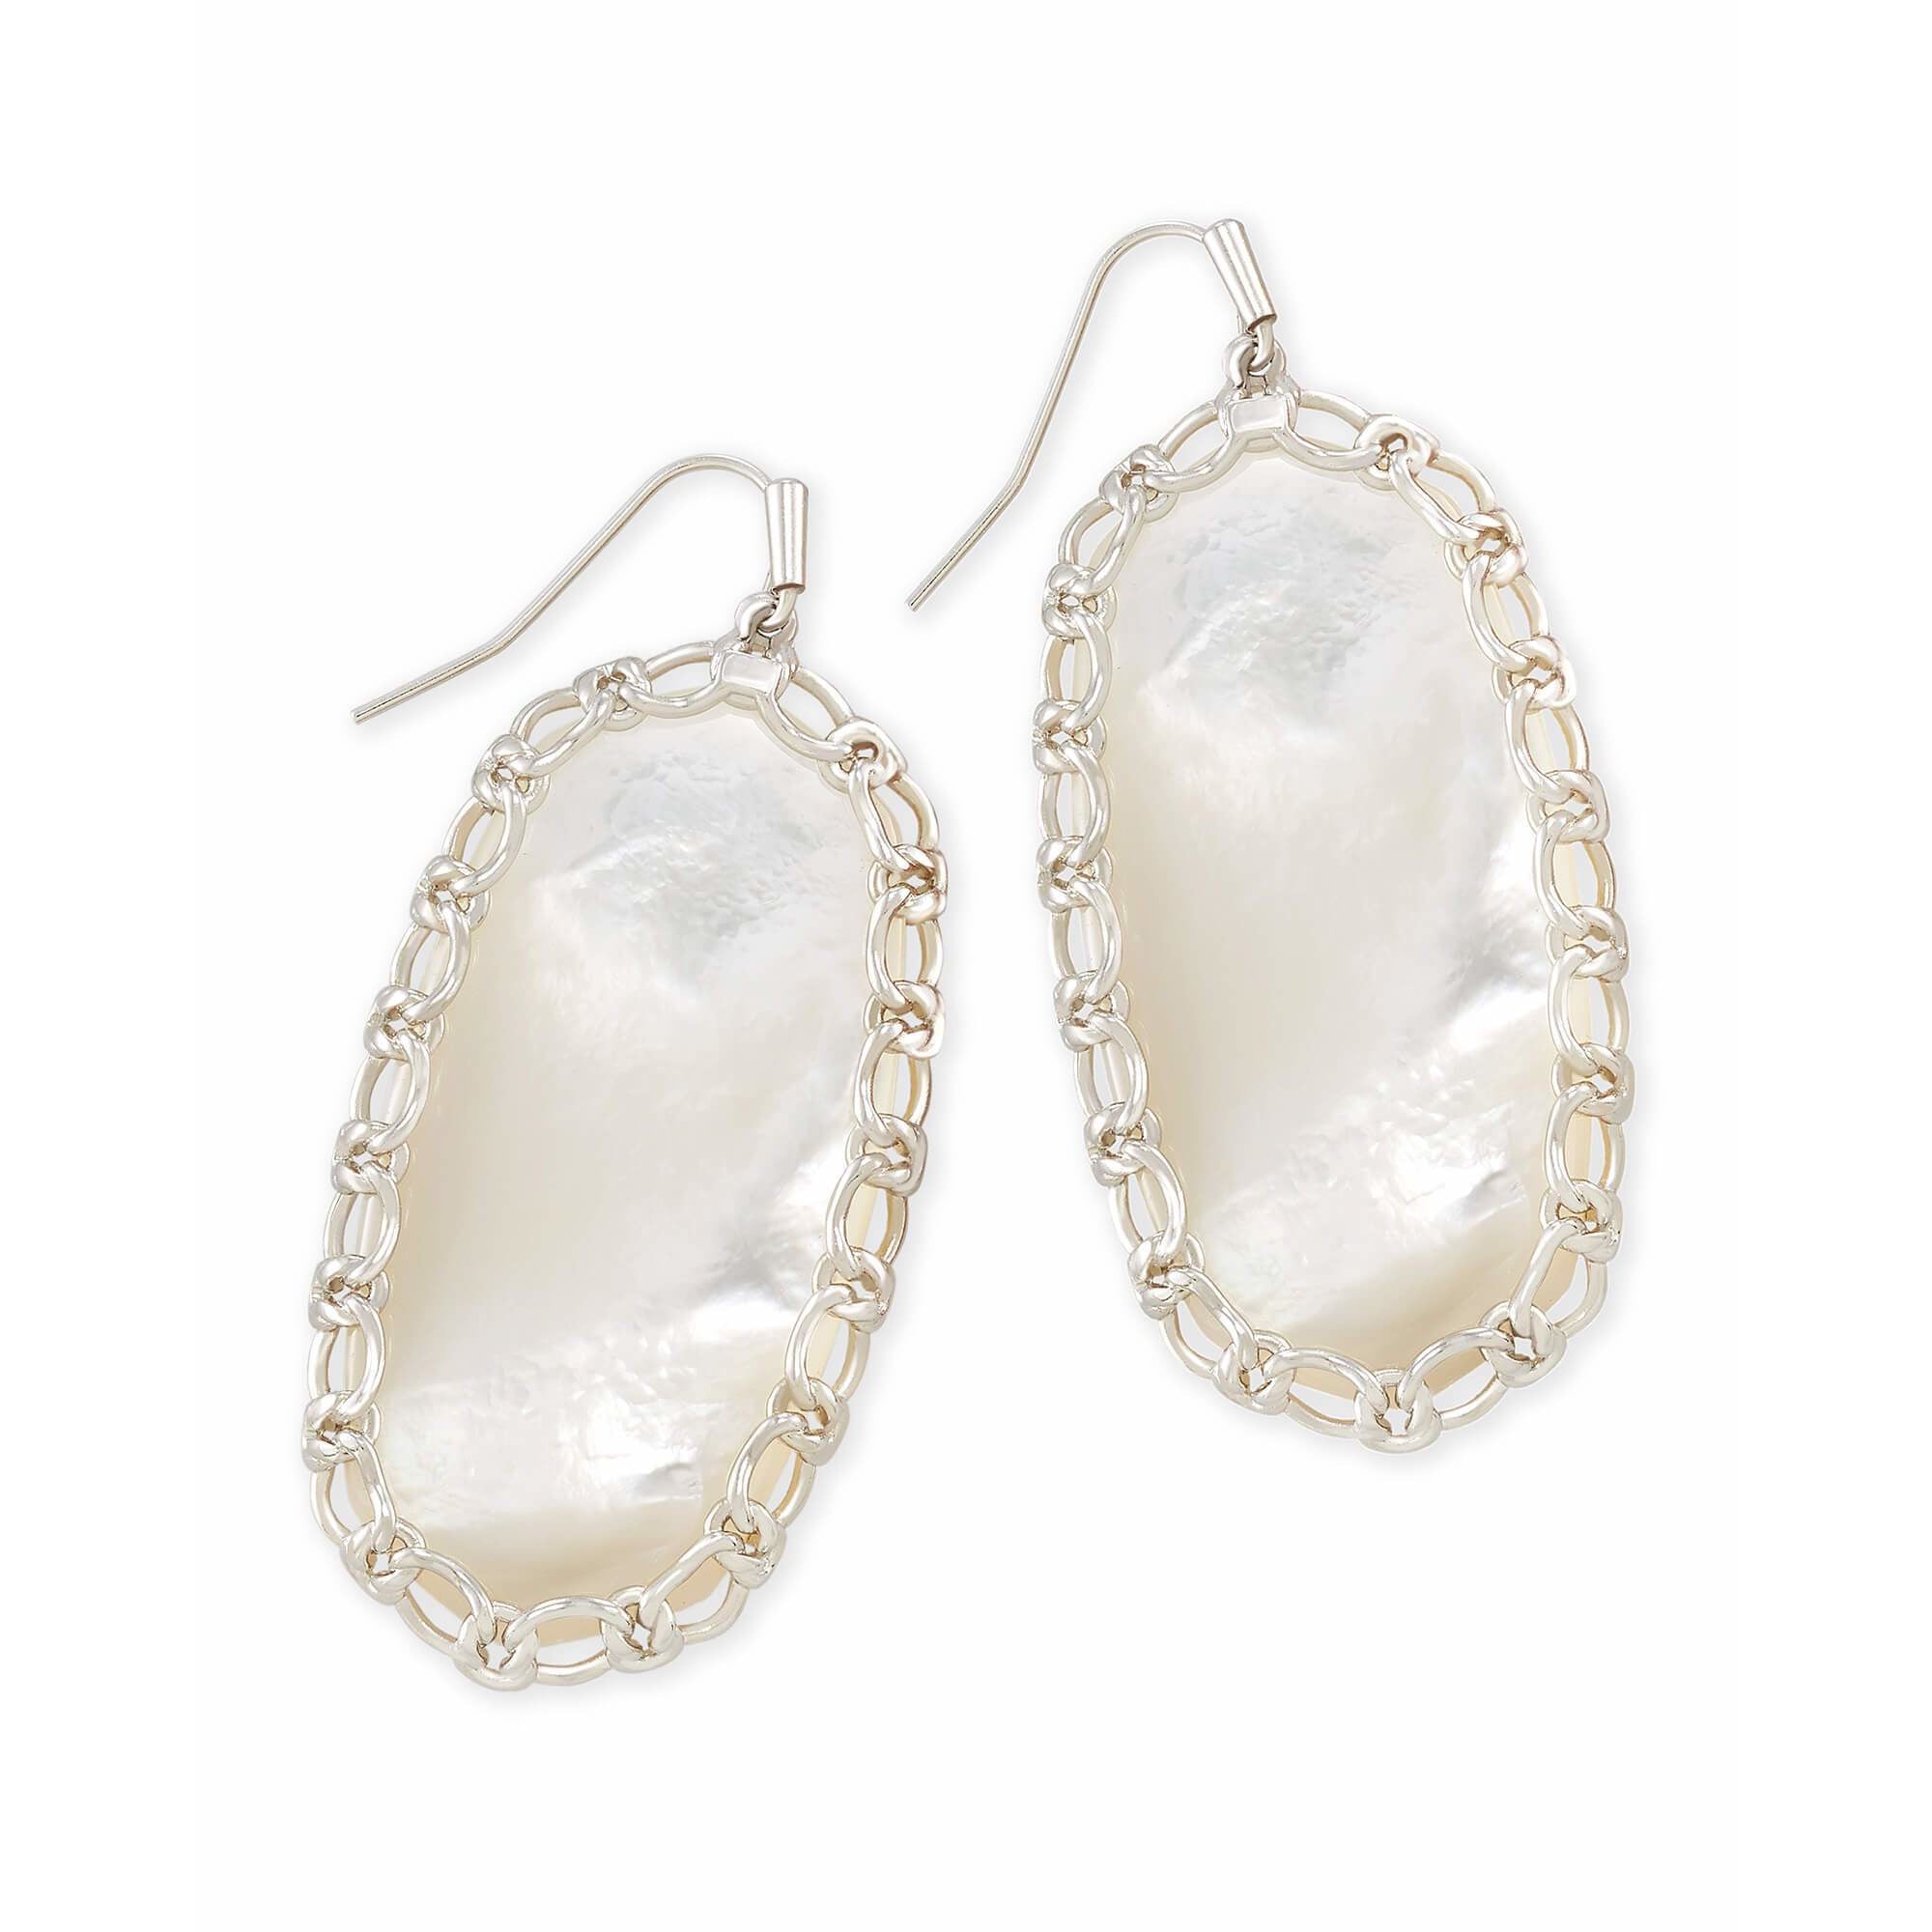 Macrame Danielle Silver Earrings in Ivory Mother-of-Pearl